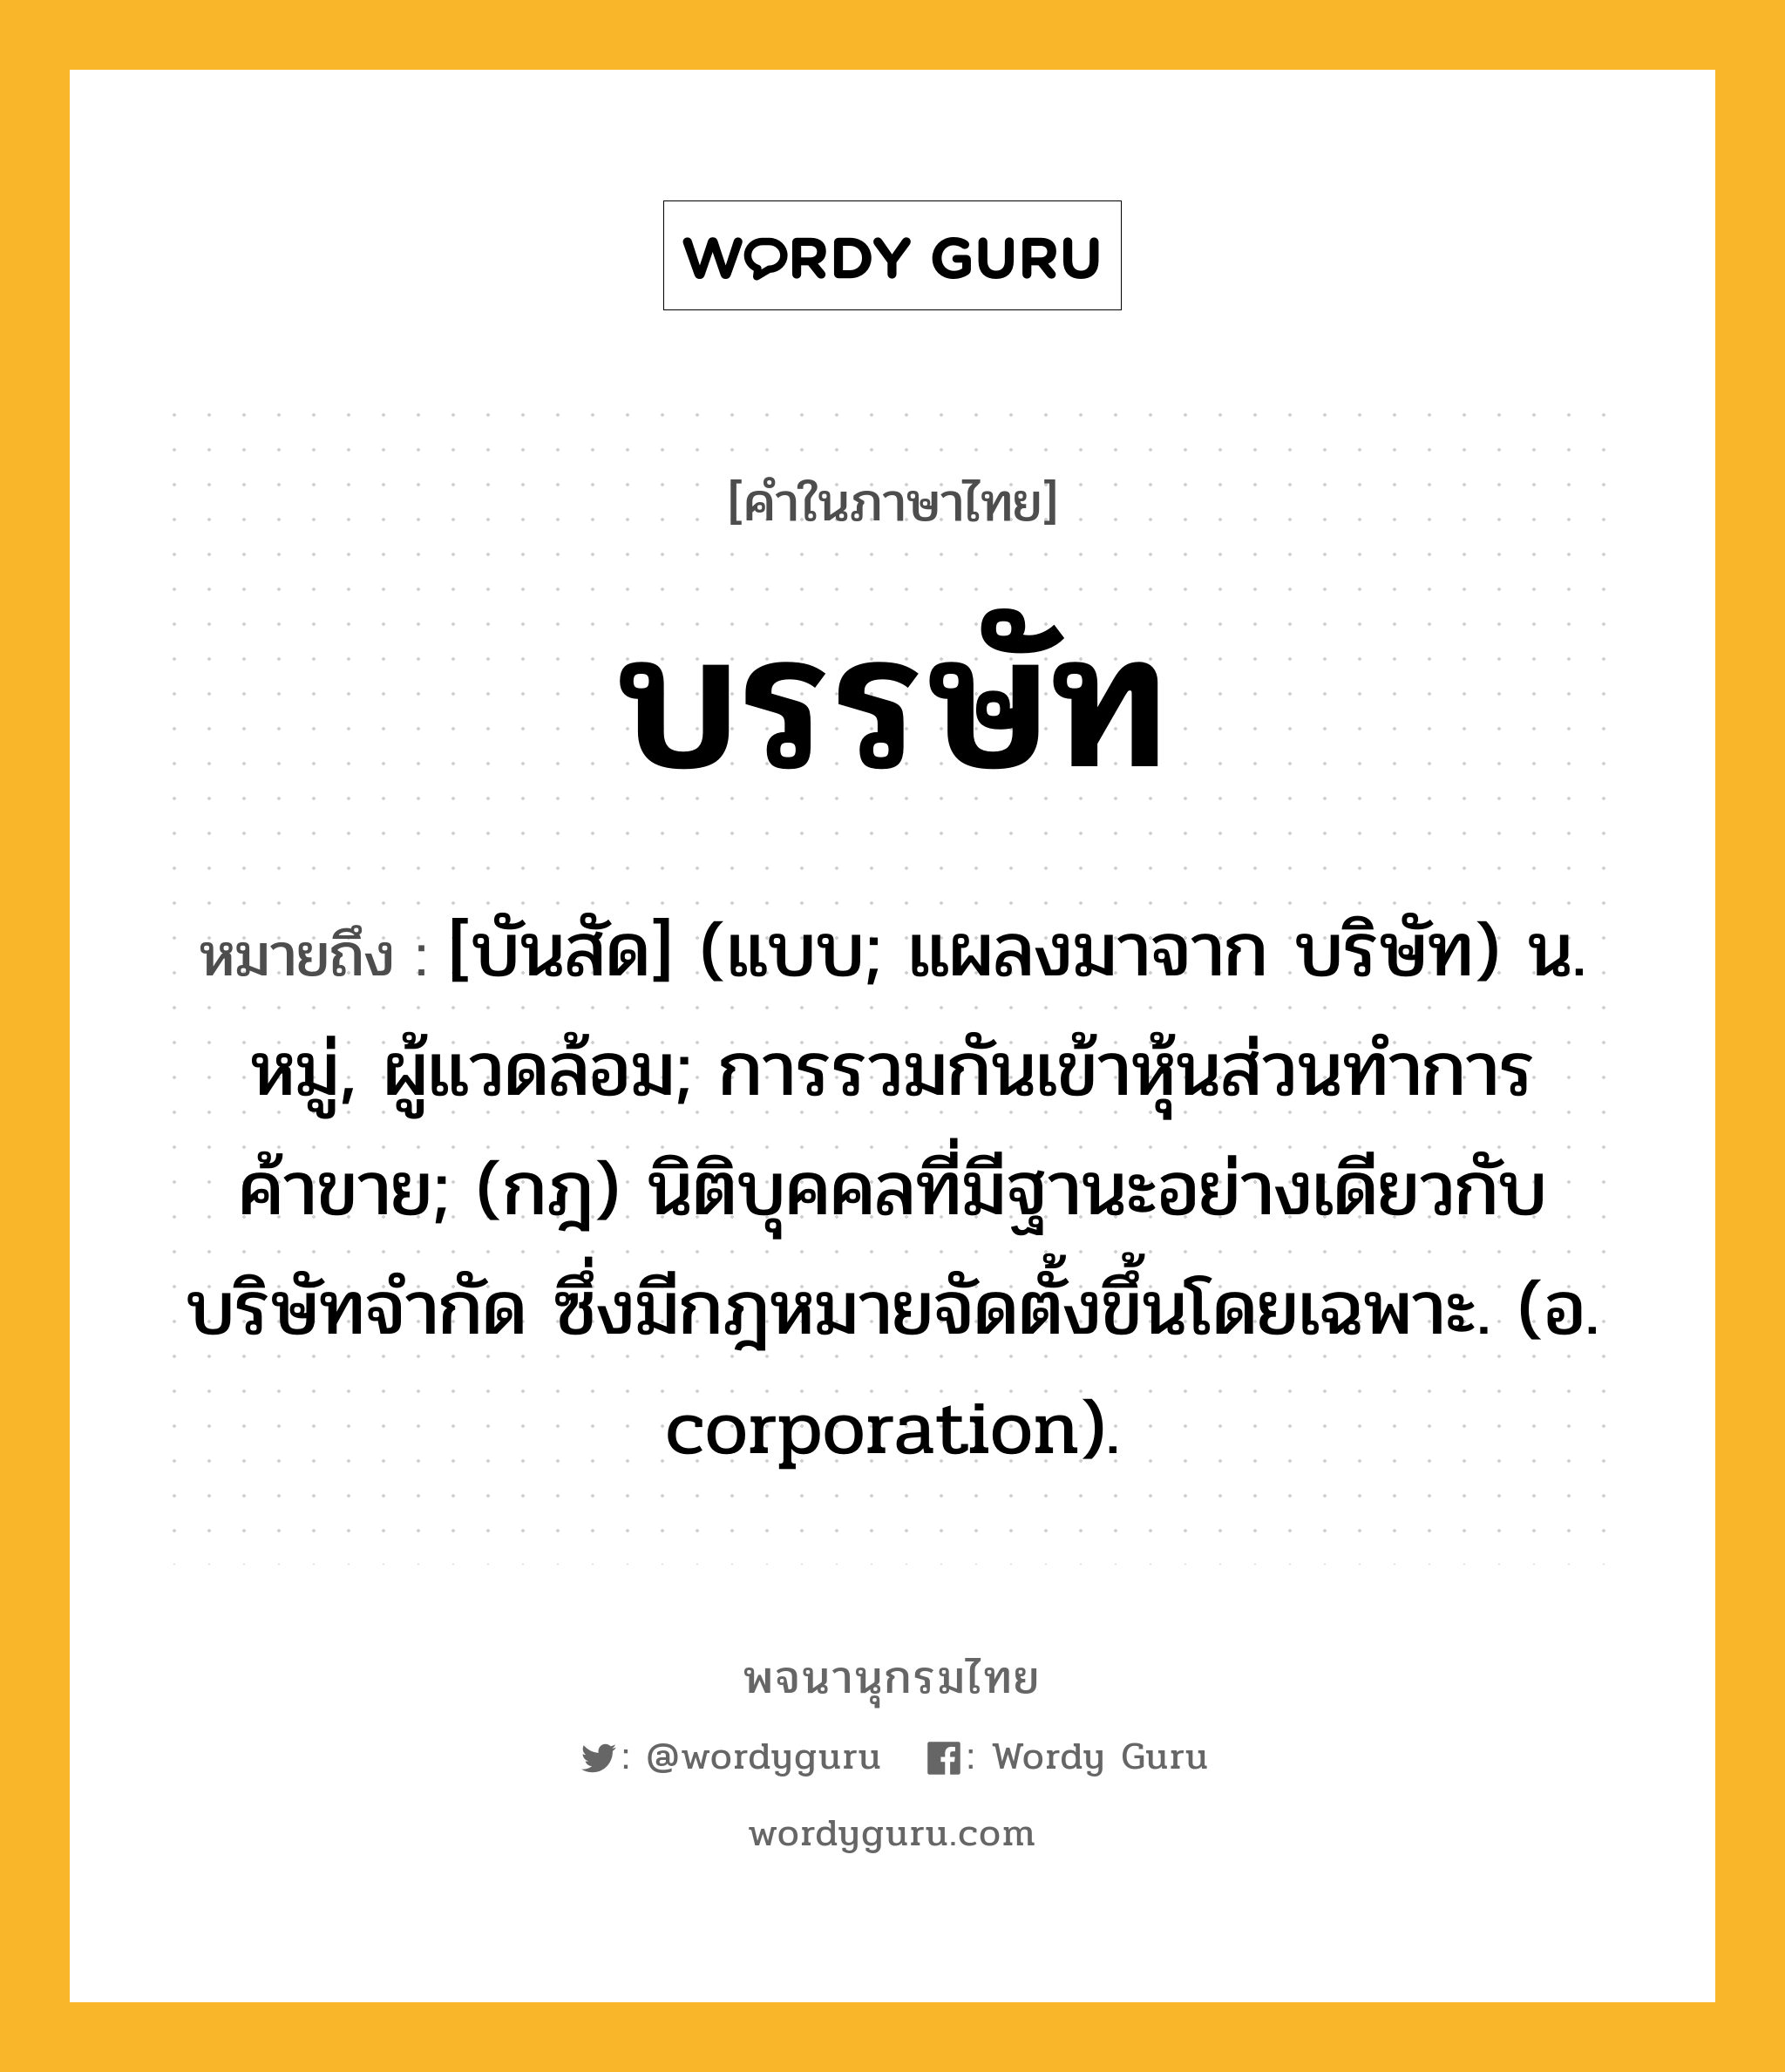 บรรษัท หมายถึงอะไร?, คำในภาษาไทย บรรษัท หมายถึง [บันสัด] (แบบ; แผลงมาจาก บริษัท) น. หมู่, ผู้แวดล้อม; การรวมกันเข้าหุ้นส่วนทําการค้าขาย; (กฎ) นิติบุคคลที่มีฐานะอย่างเดียวกับบริษัทจํากัด ซึ่งมีกฎหมายจัดตั้งขึ้นโดยเฉพาะ. (อ. corporation).